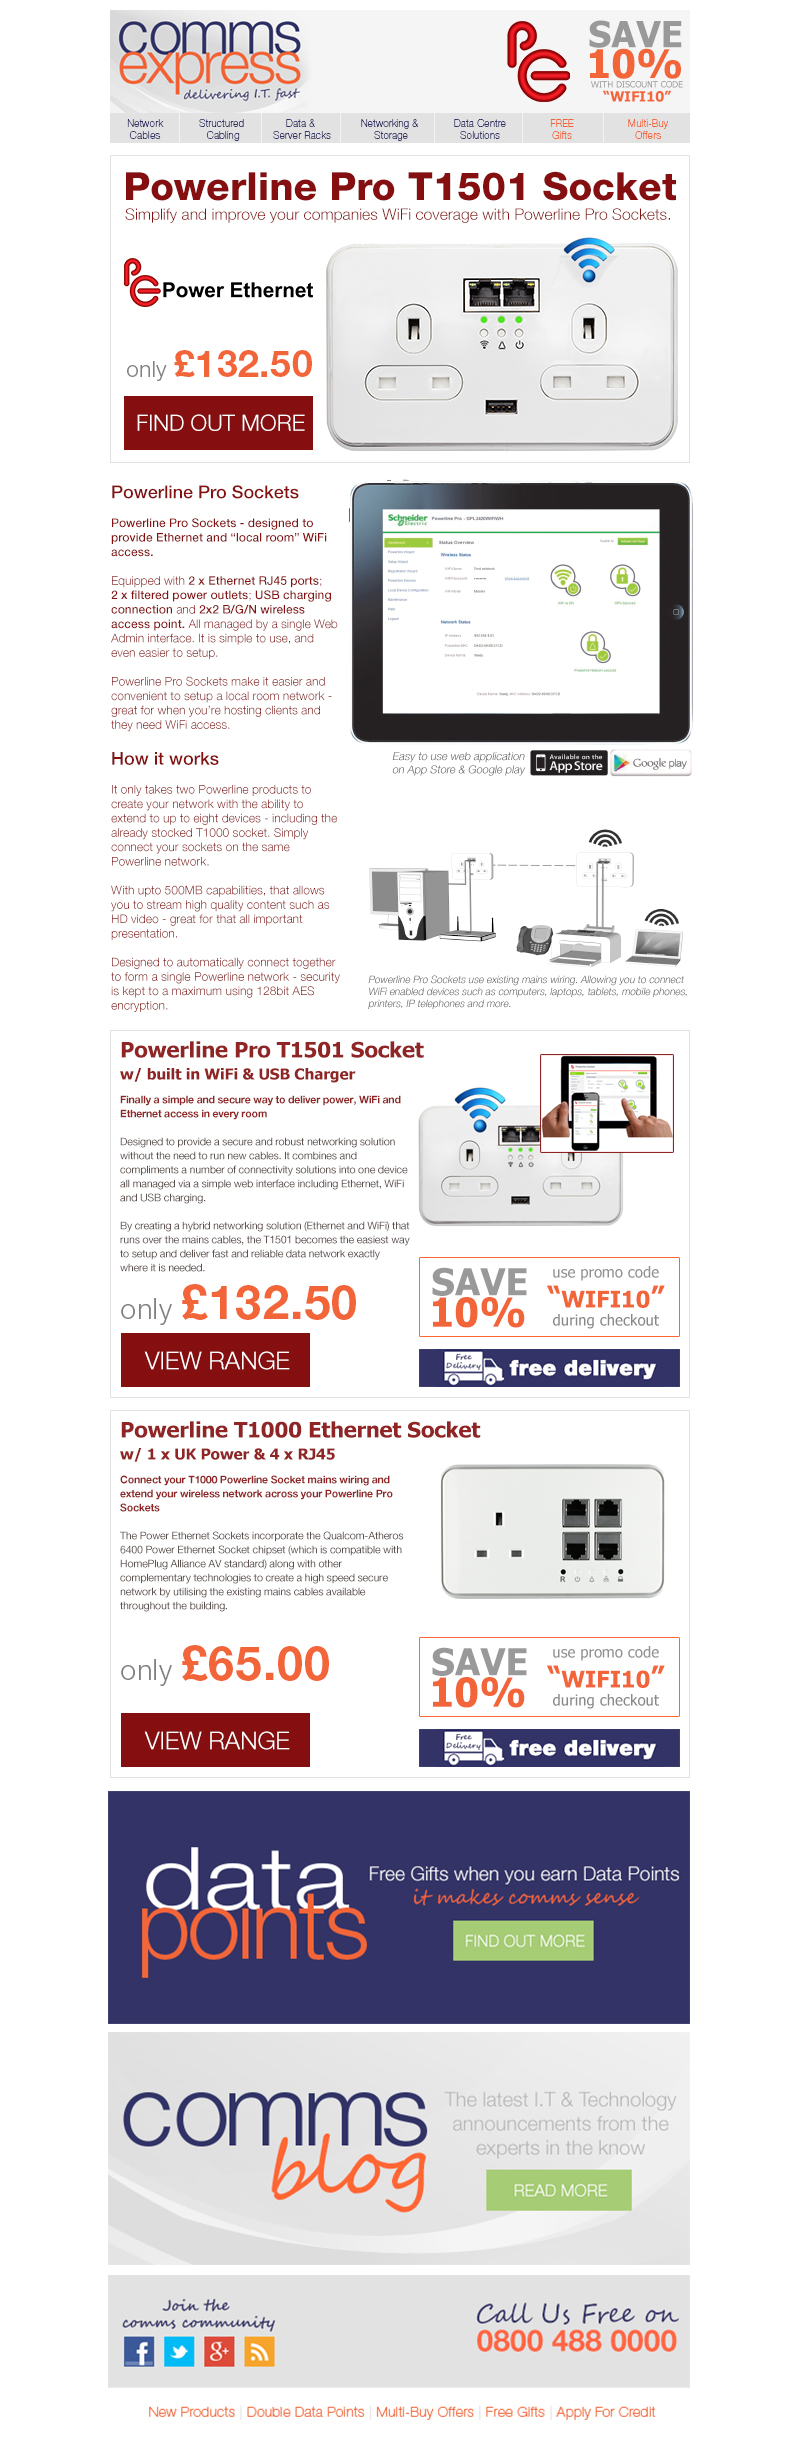 Power Ethernet Powerline Pro WiFi Sockets - Offering Po